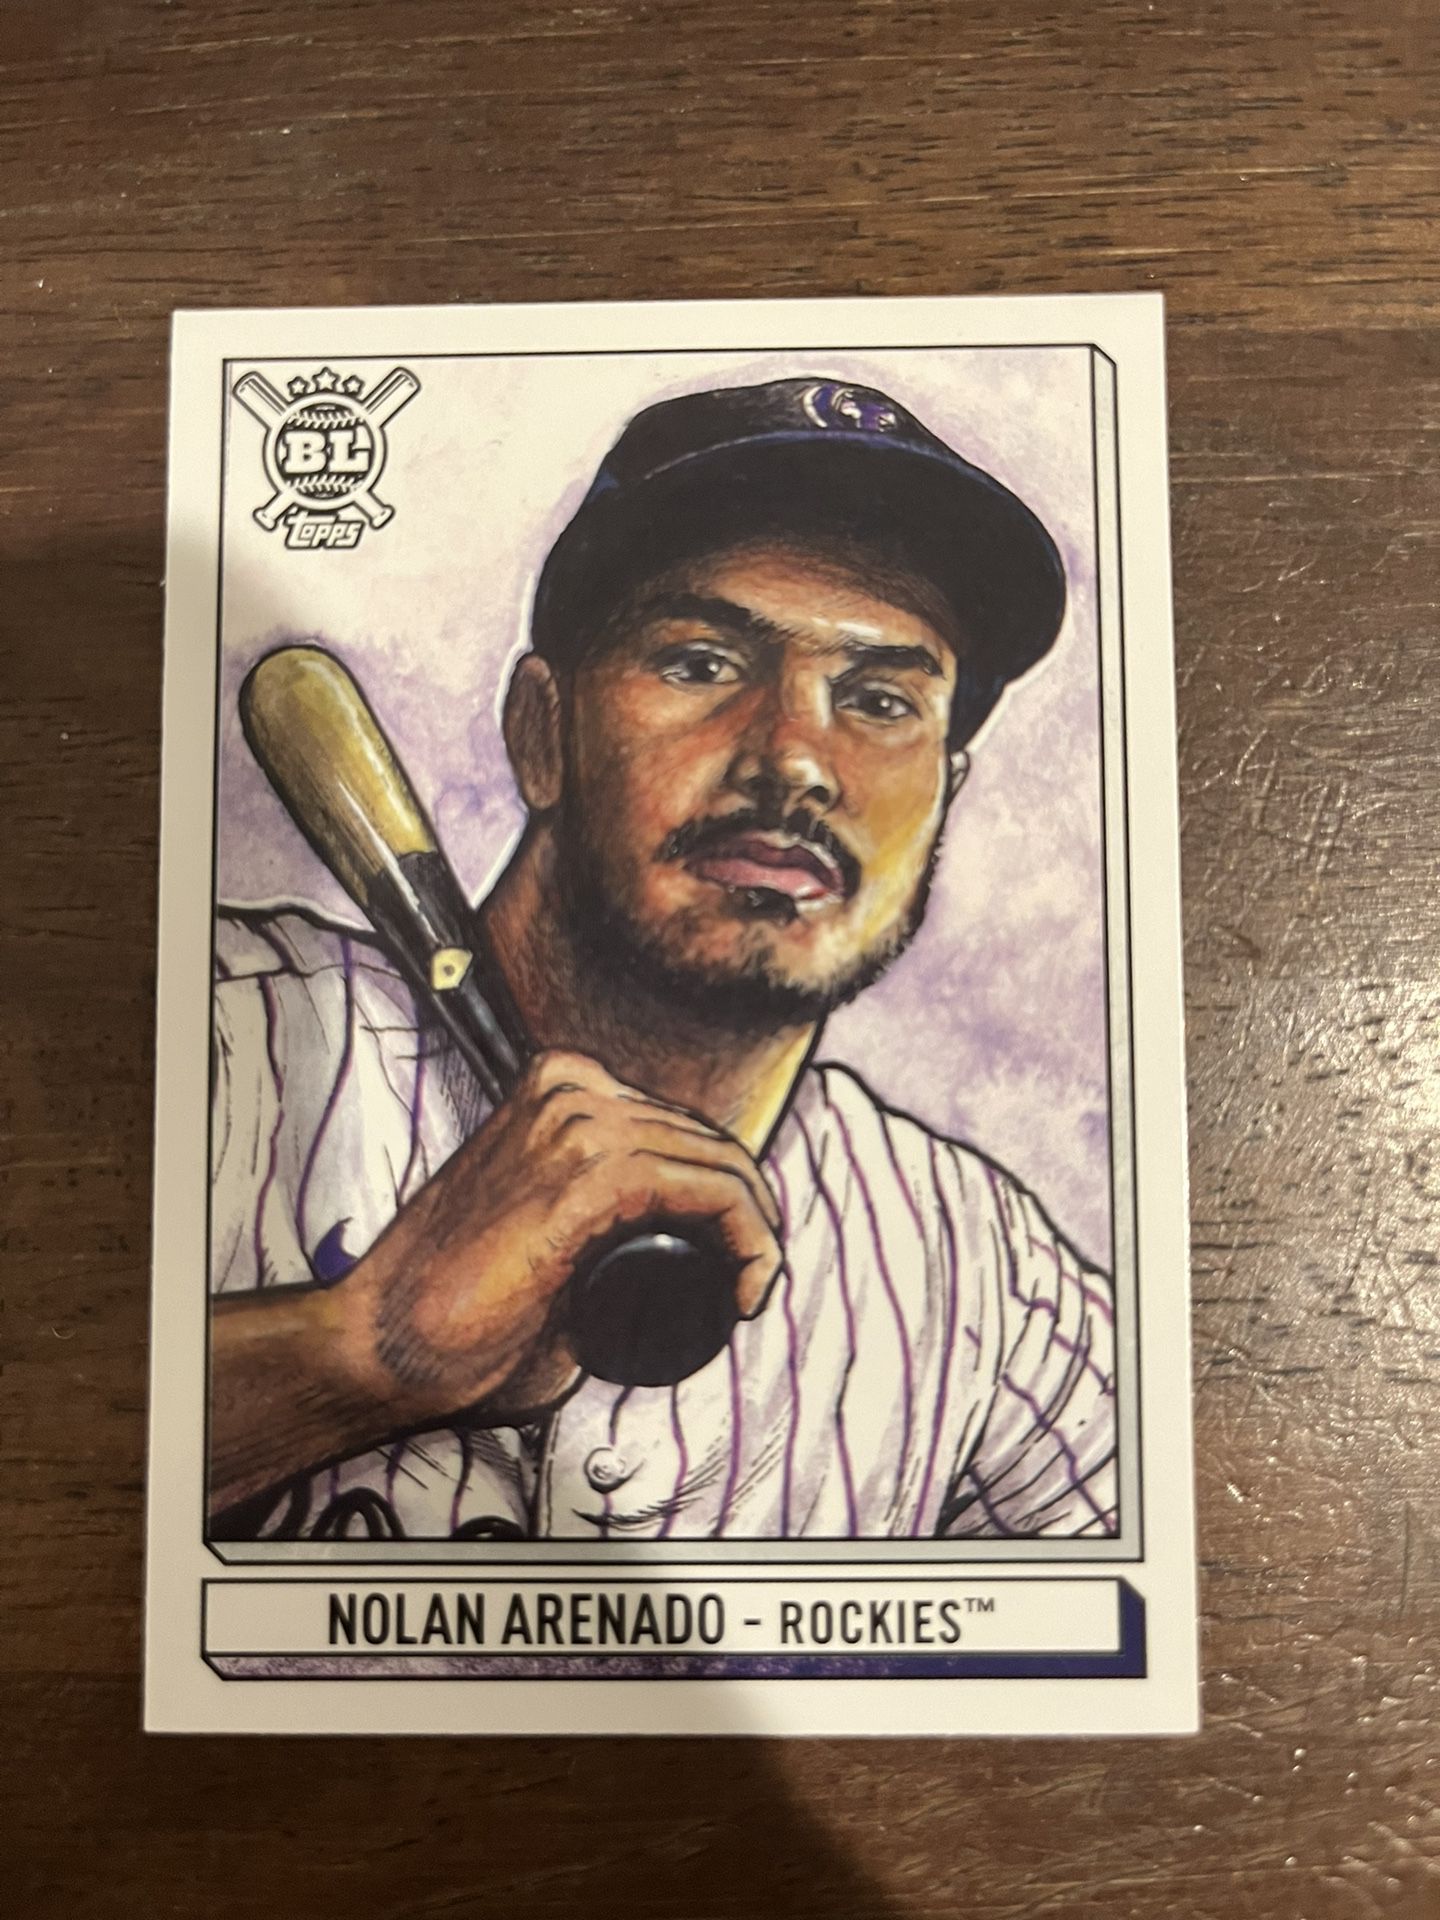 Nolan Arenado - 4 Card set ($6)